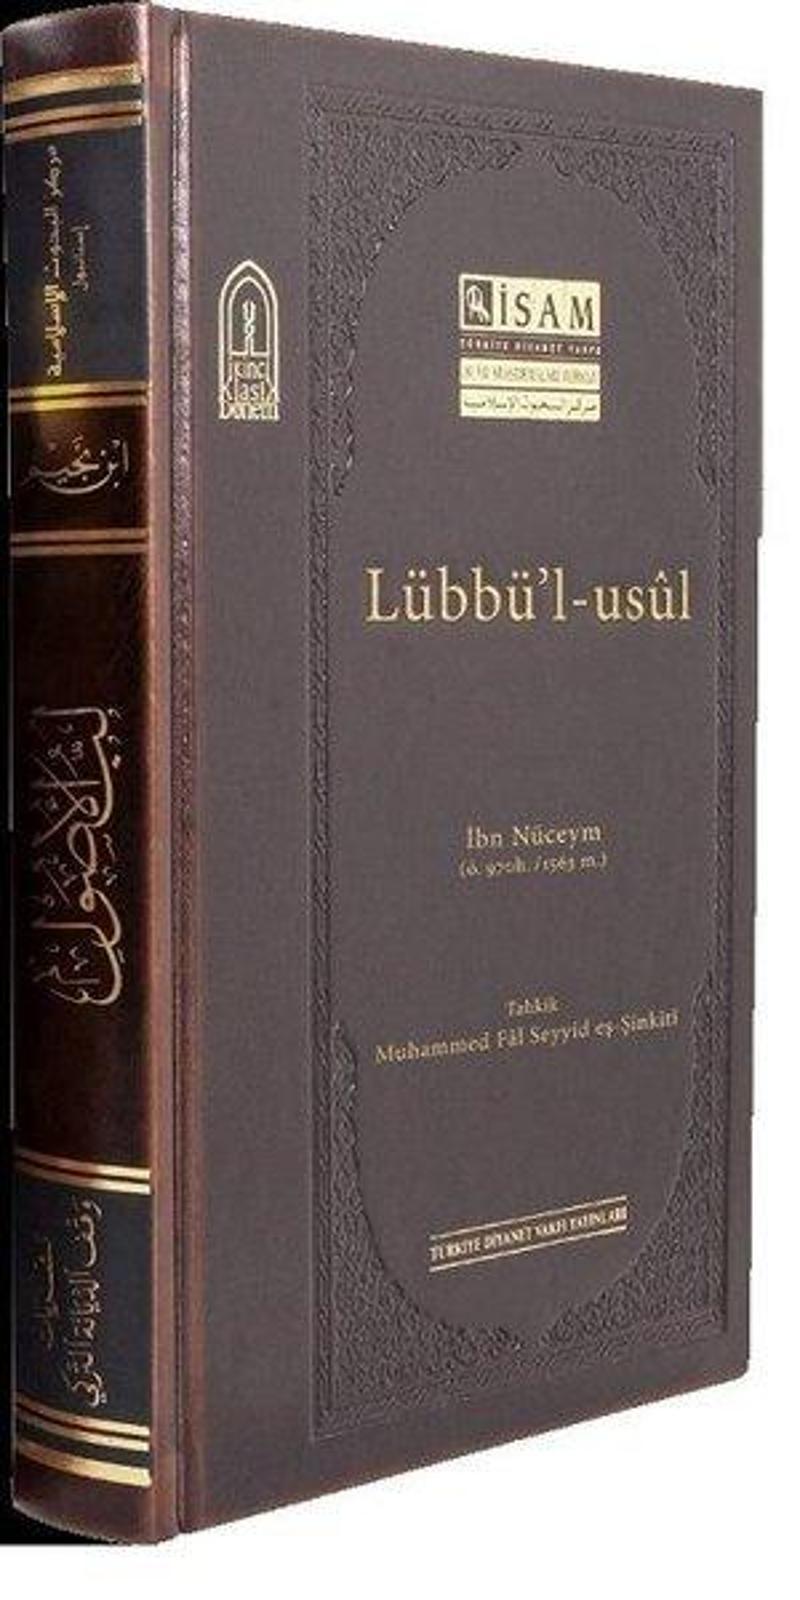 İsam Yayınları Lübbül Usul - İbn Nüceym